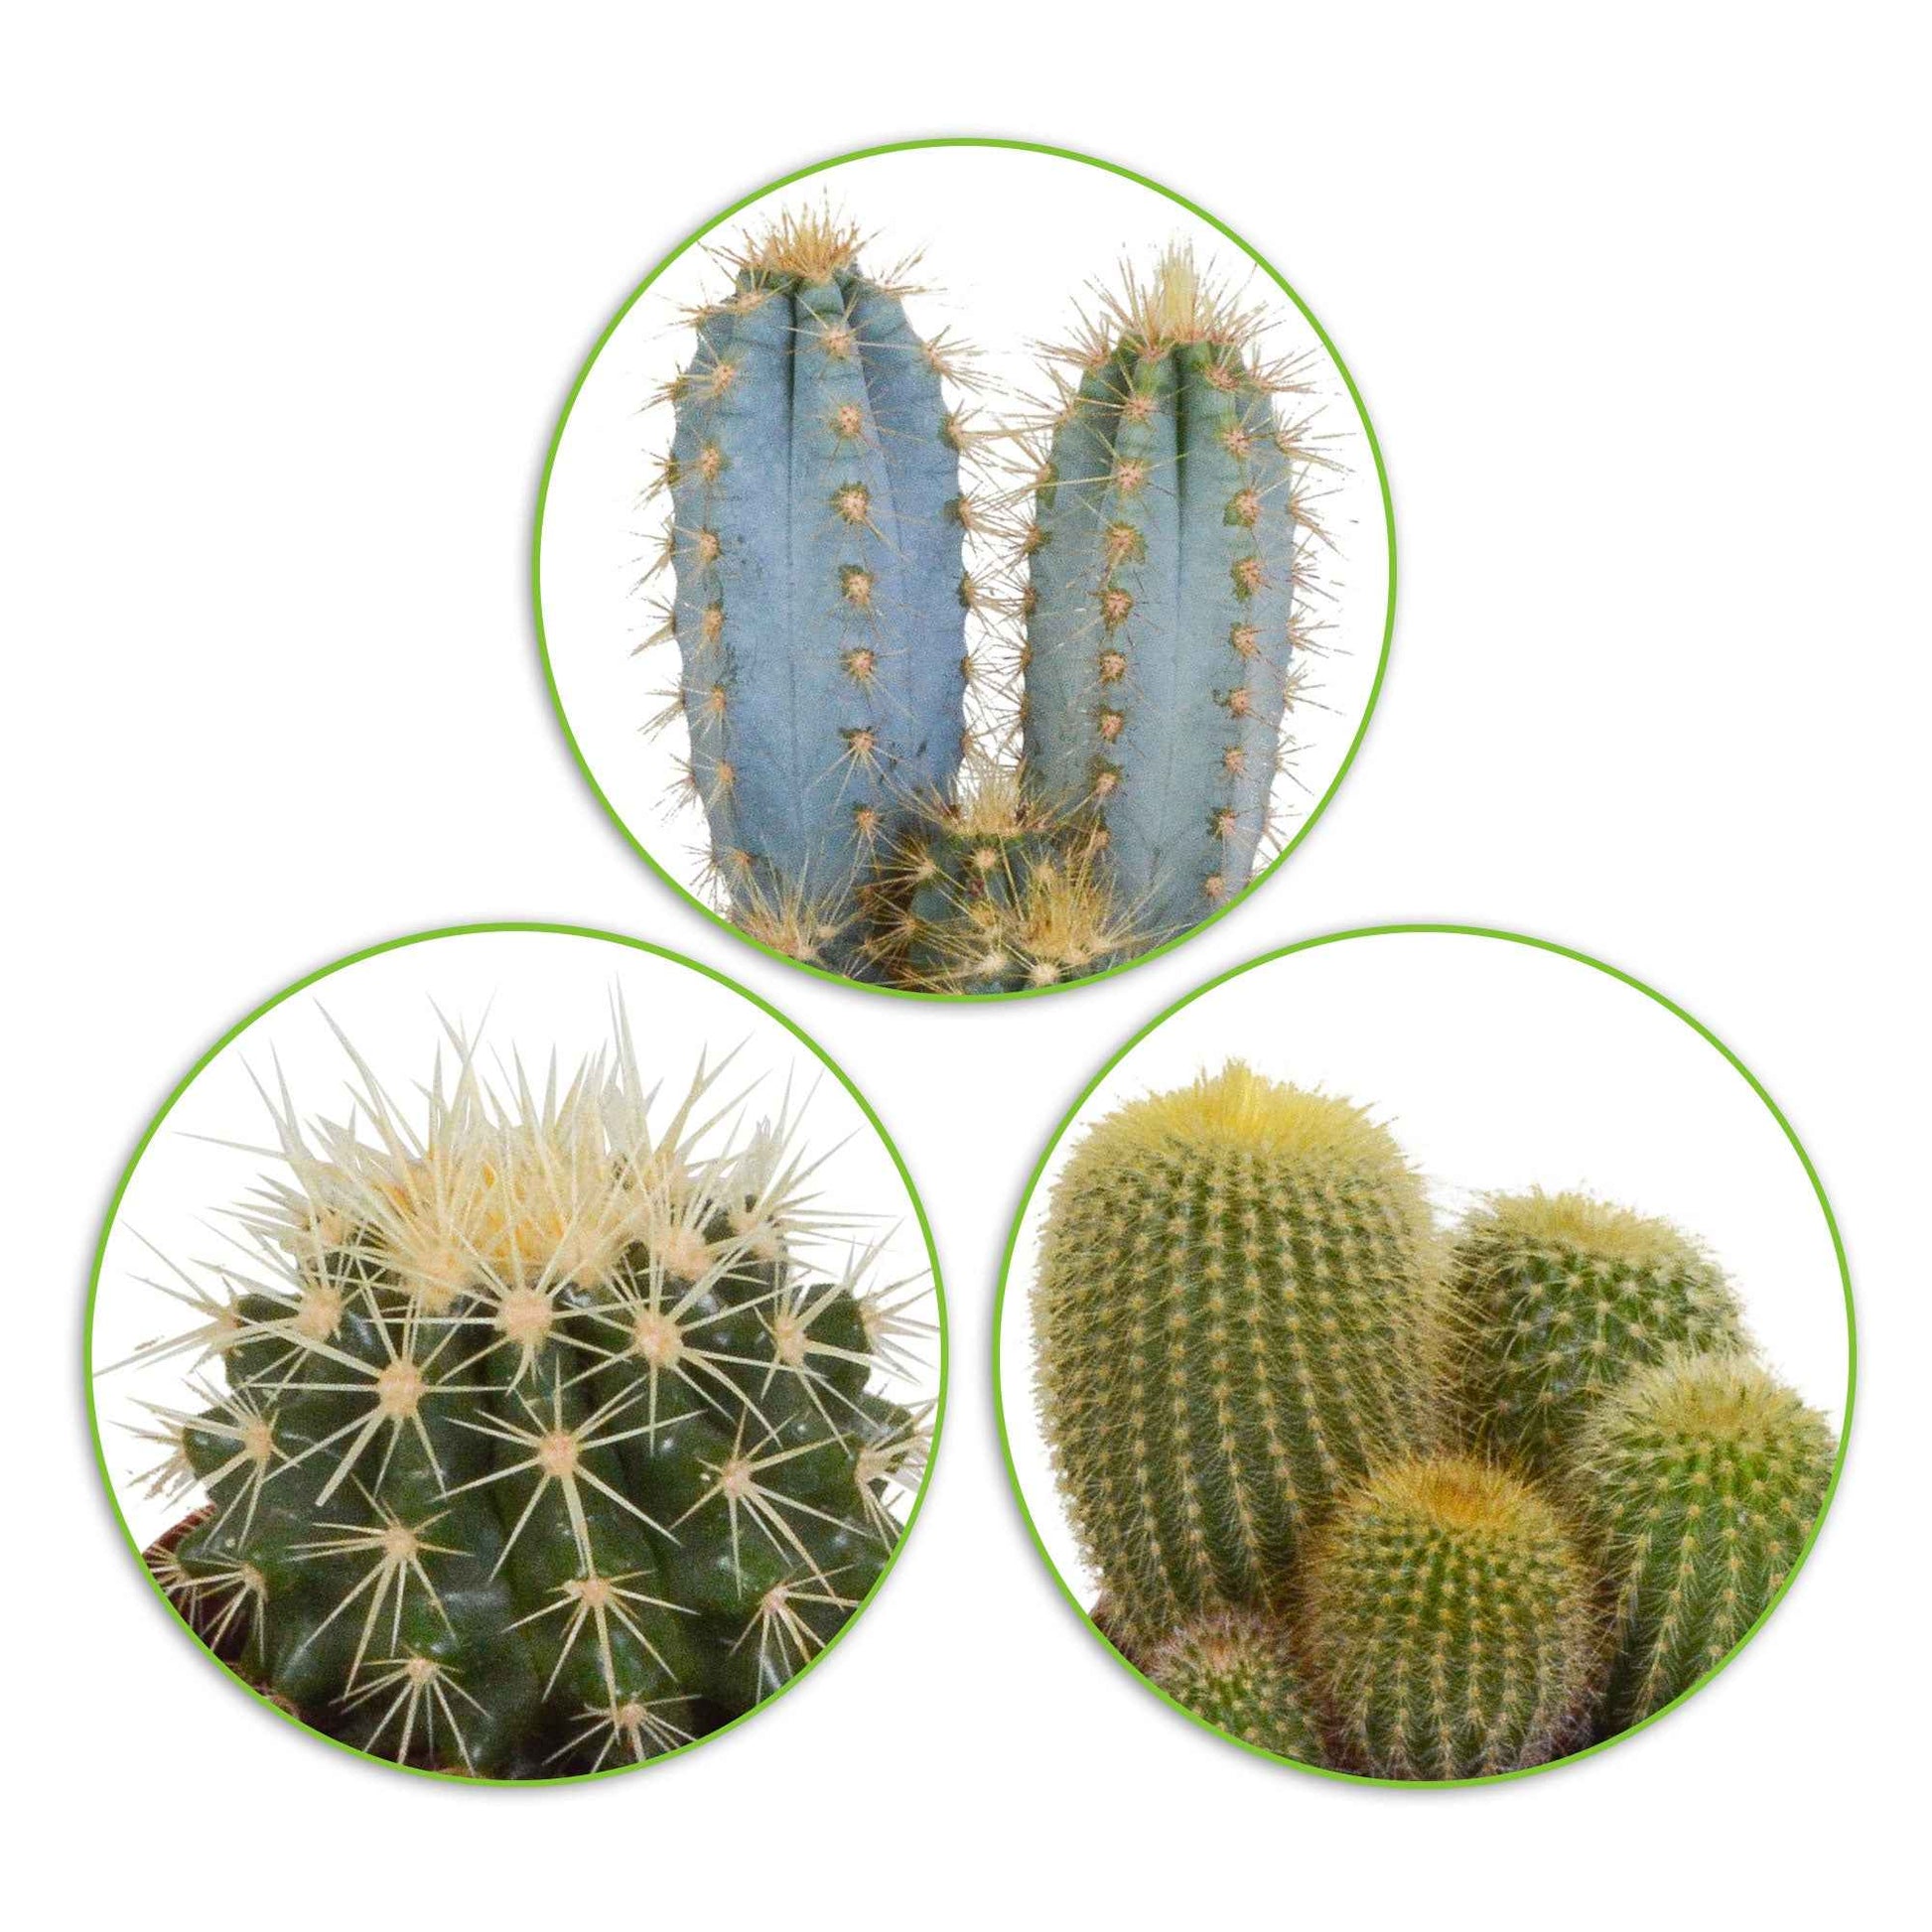 Kaktus Mischung (x3) -  eriocactus, pilosocereus, echinocactus - Zimmerpflanzen Sets